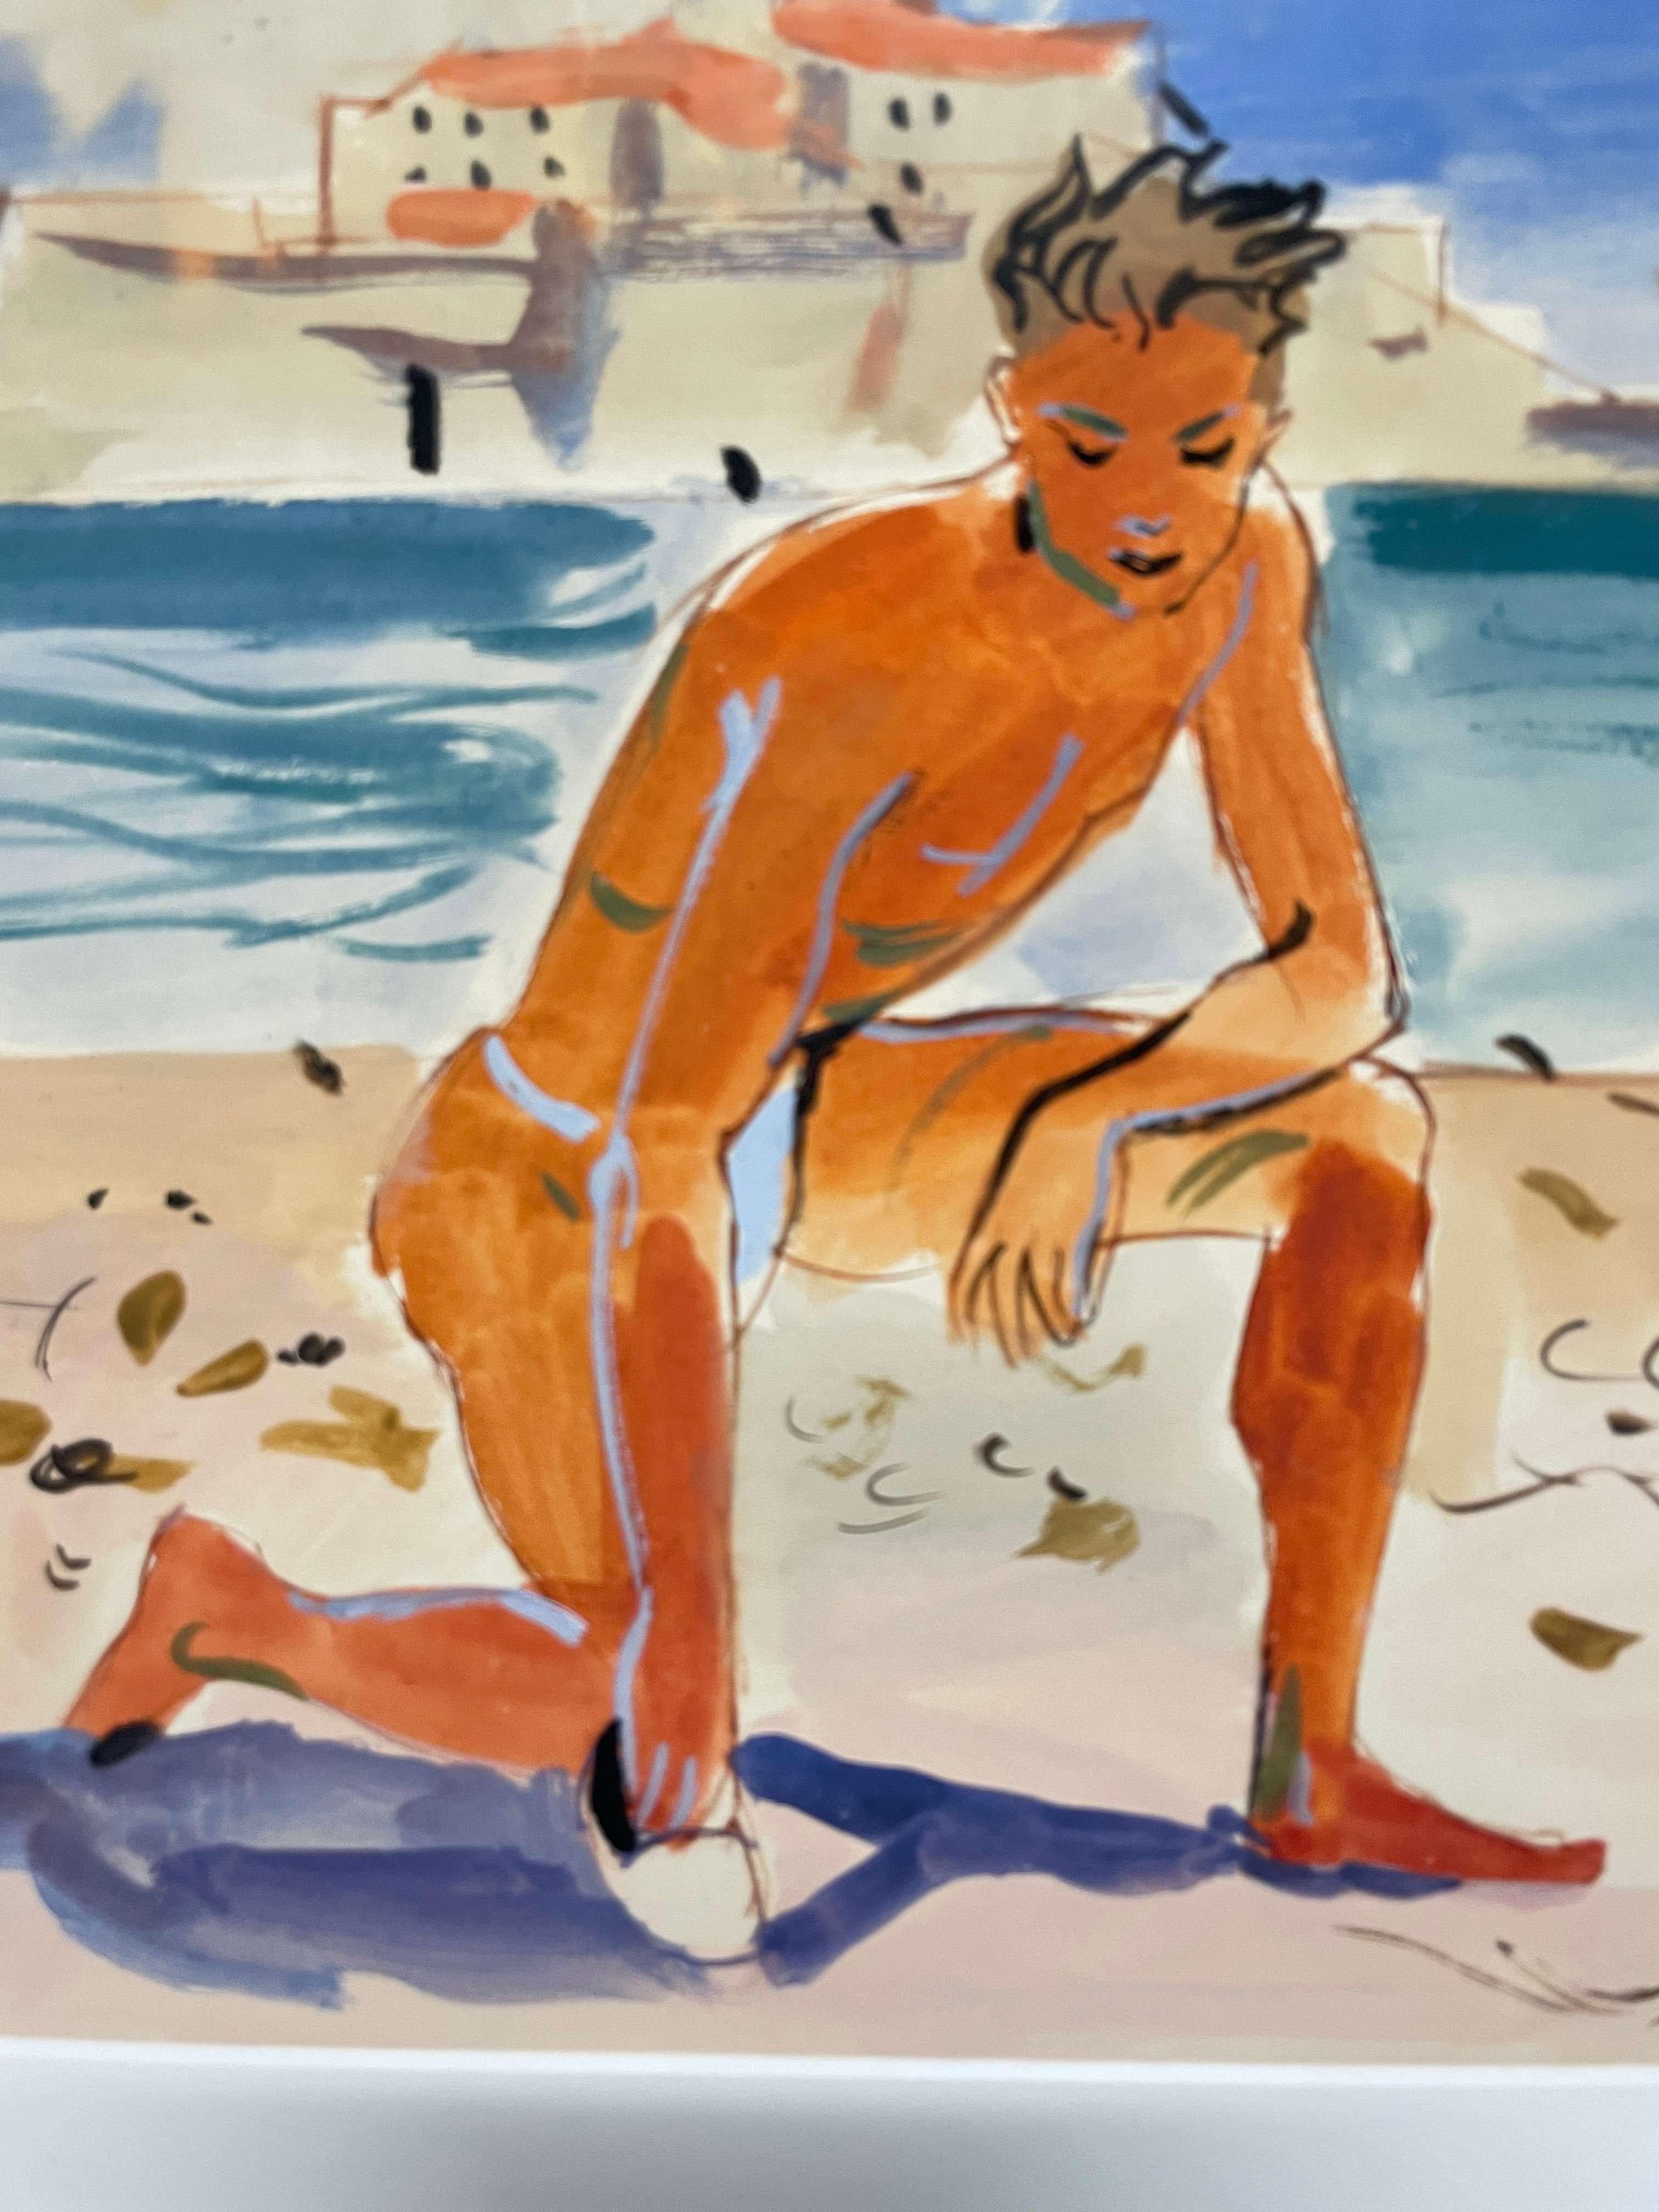 Ein Aquarell aus der Mitte des Jahrhunderts von Andre Delfau, das einen knienden Mann an einem Strand der Côte d'Azur zeigt.

Der 1914 in Paris geborene Andre Delfau wurde ein international anerkannter Bühnen-, Bühnenbild- und Kostümbildner, der von